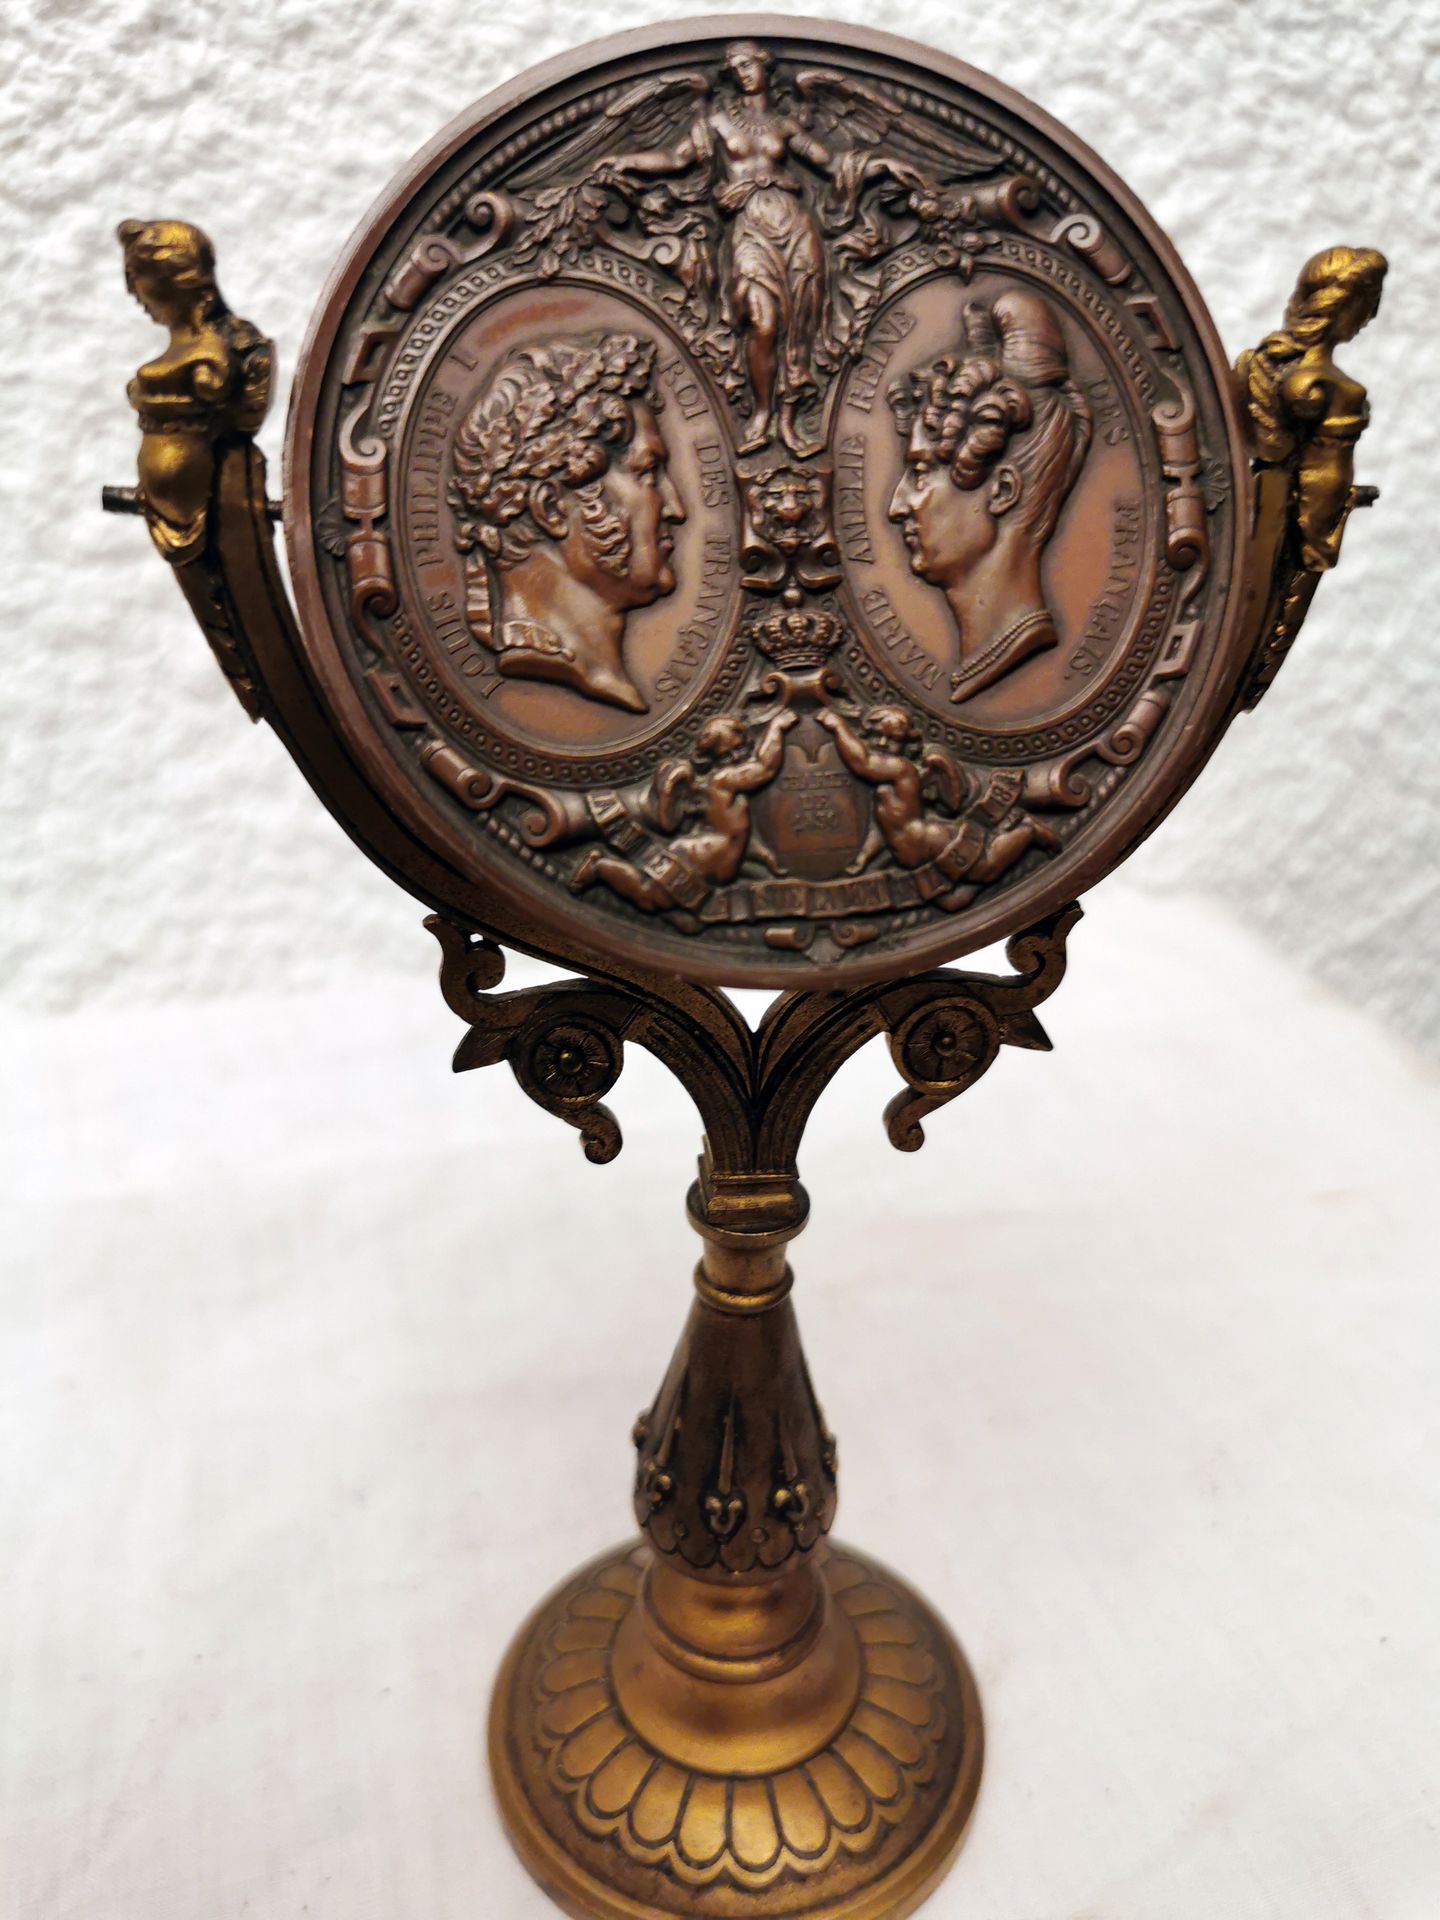 MEDAILLE LOUIS PHILIPPE 纪念路易-菲利普和玛丽-阿梅丽1830年宪章的奖章，背面是王室成员的肖像，装在镜子的形状中 18x10x6